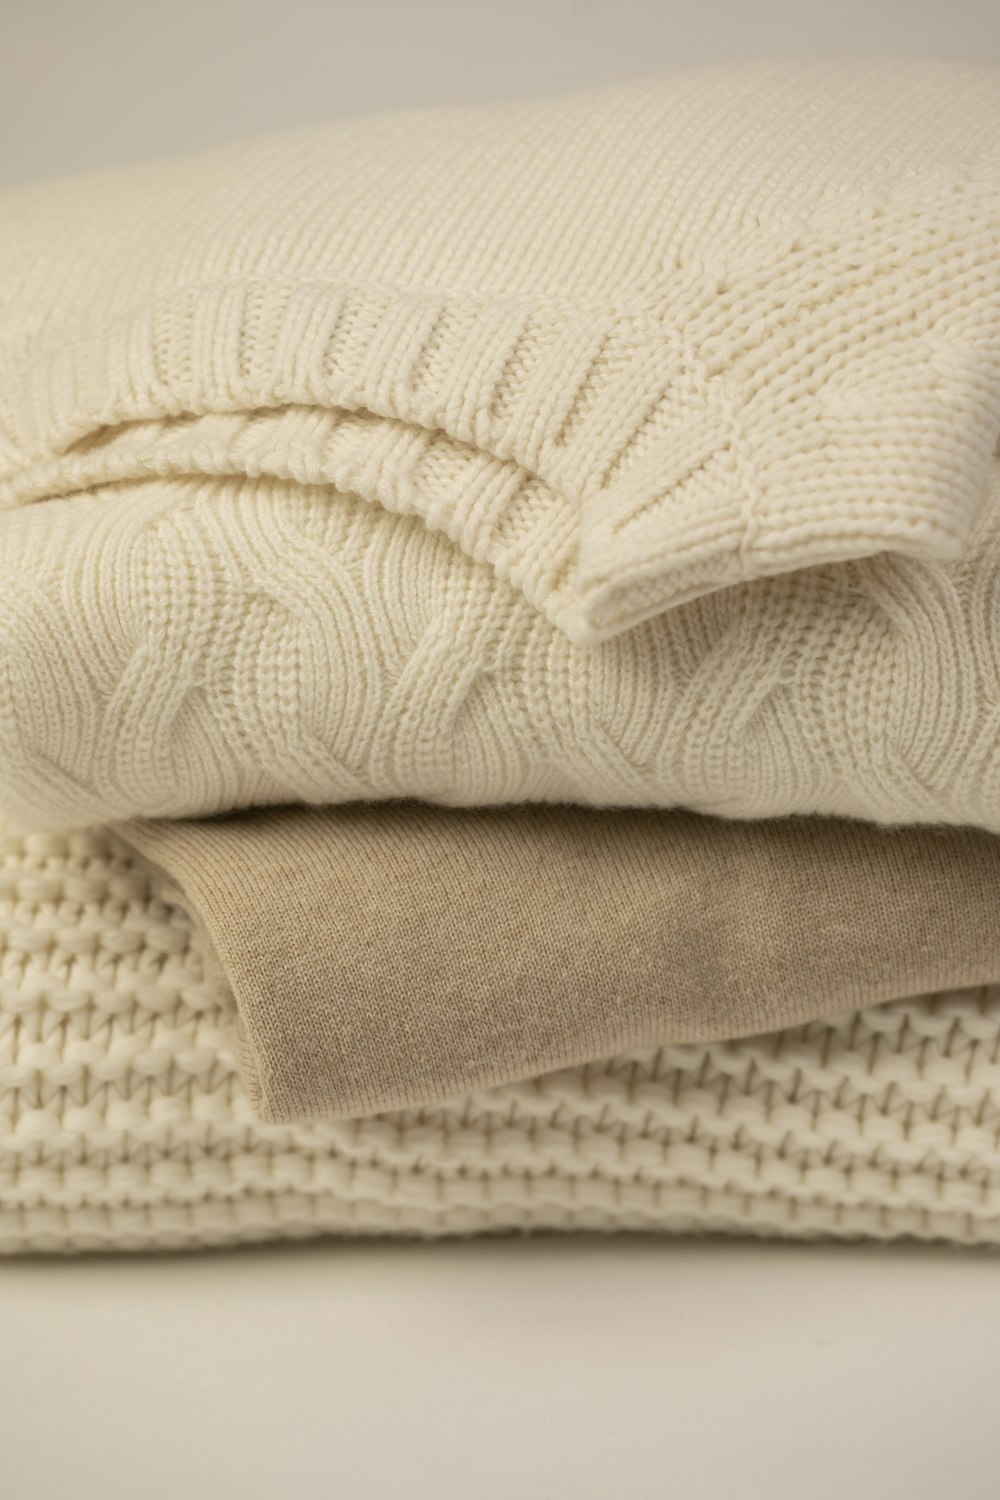 white textile on white textile